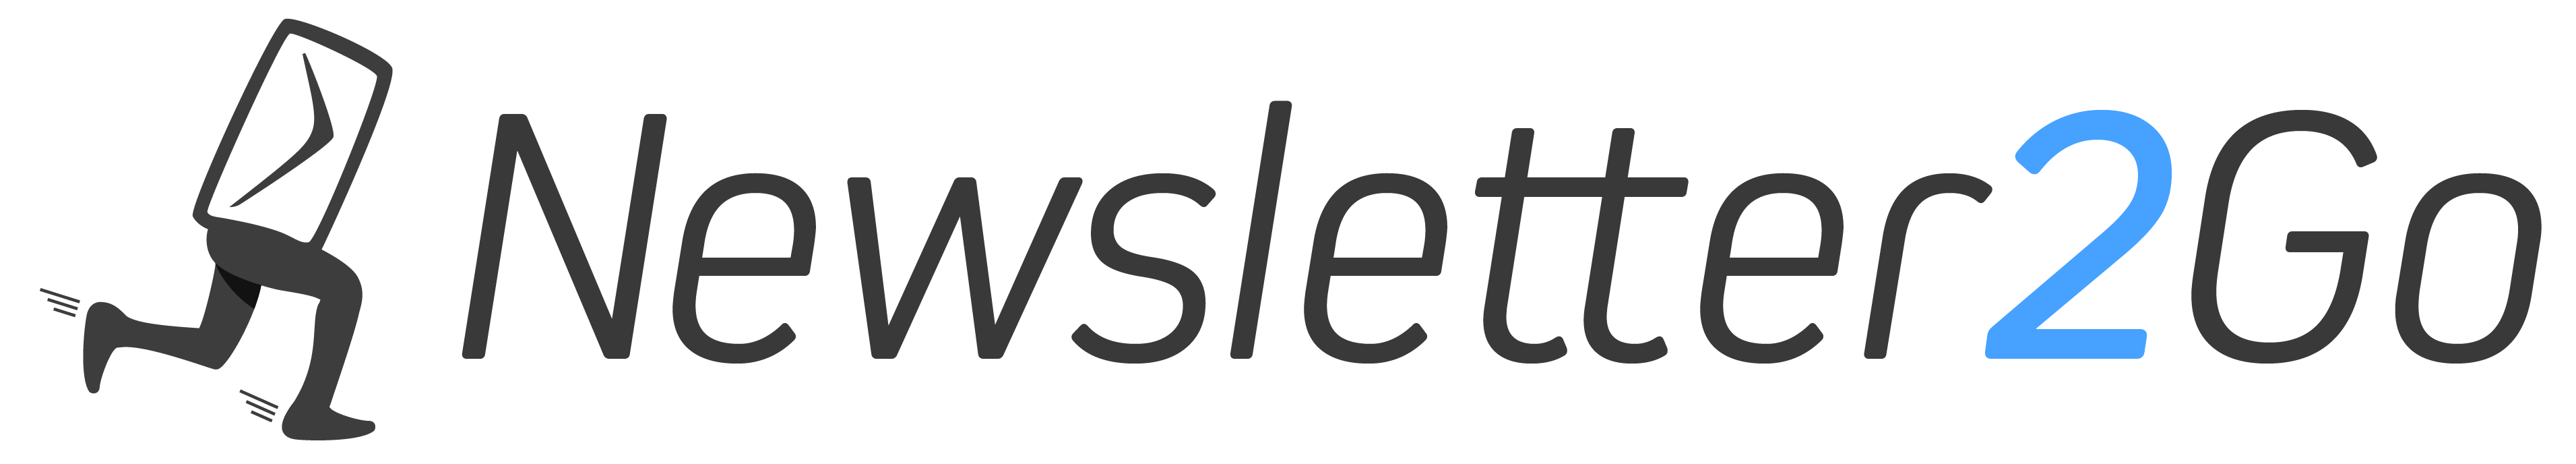 Logo Newsletter2go